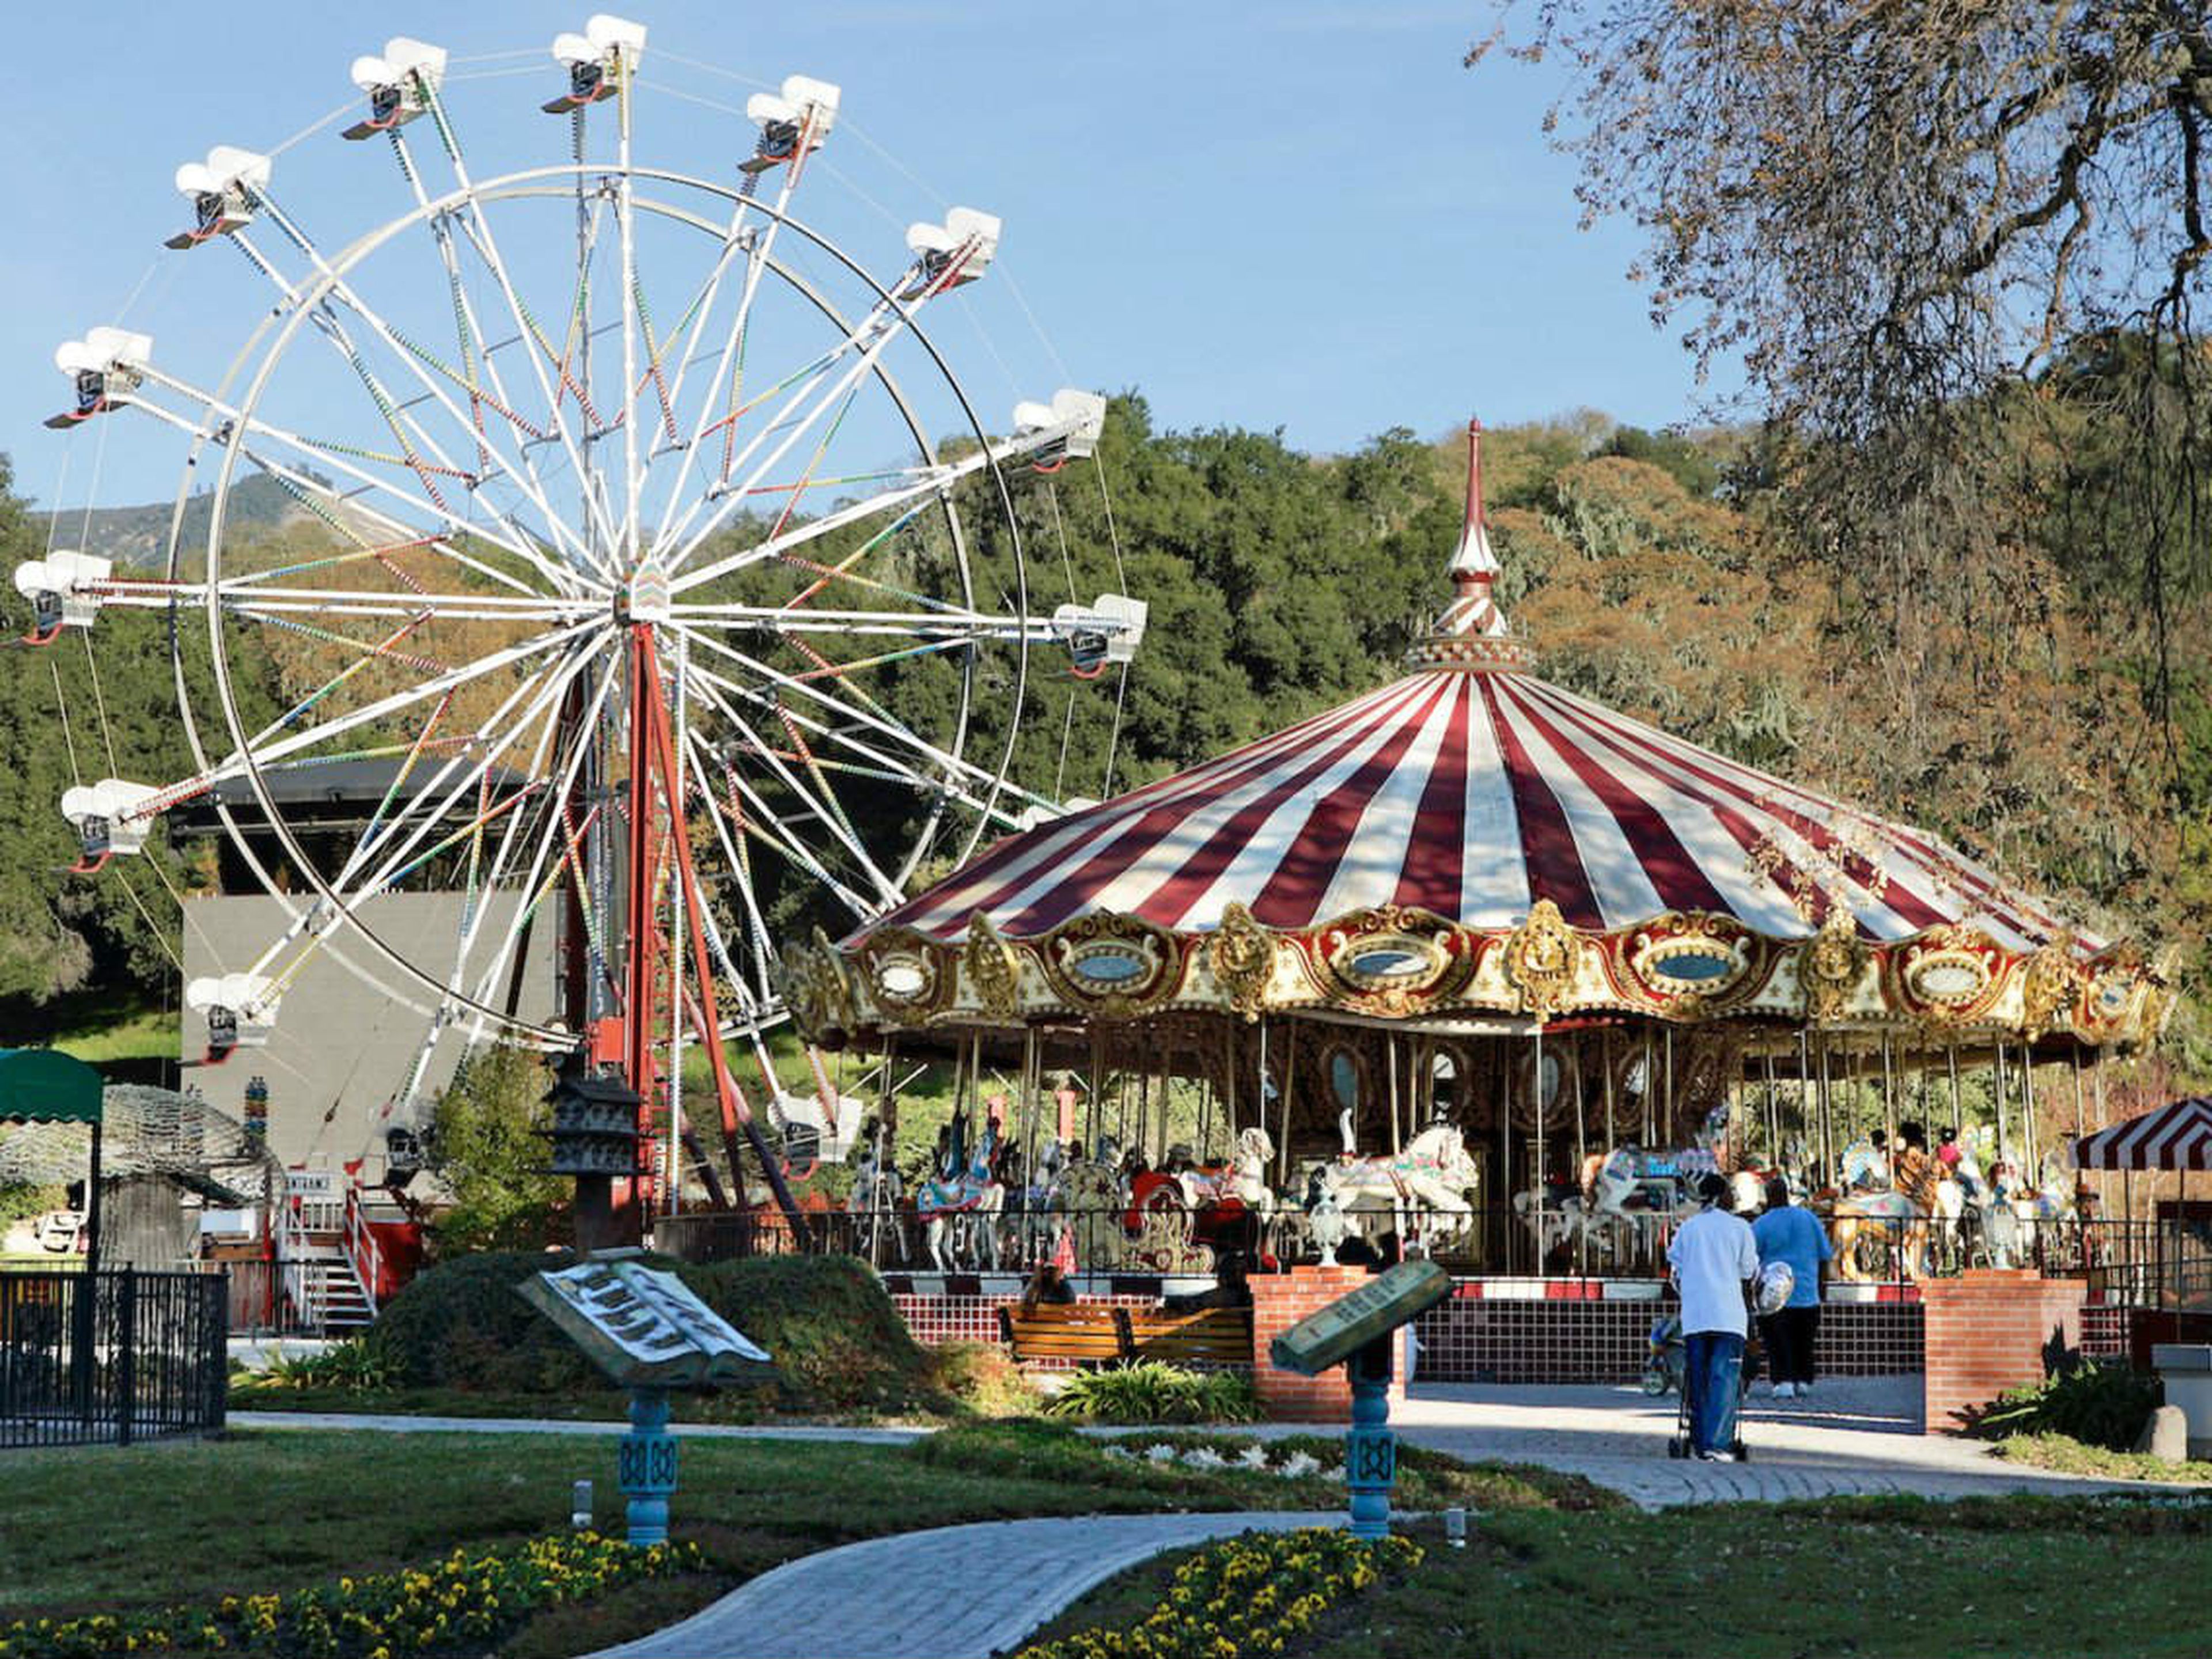 Neverland también solía tener un parque de atracciones. Pero Colony Capital convirtió el área en un "jardín zen" cuando compró el rancho en 2008